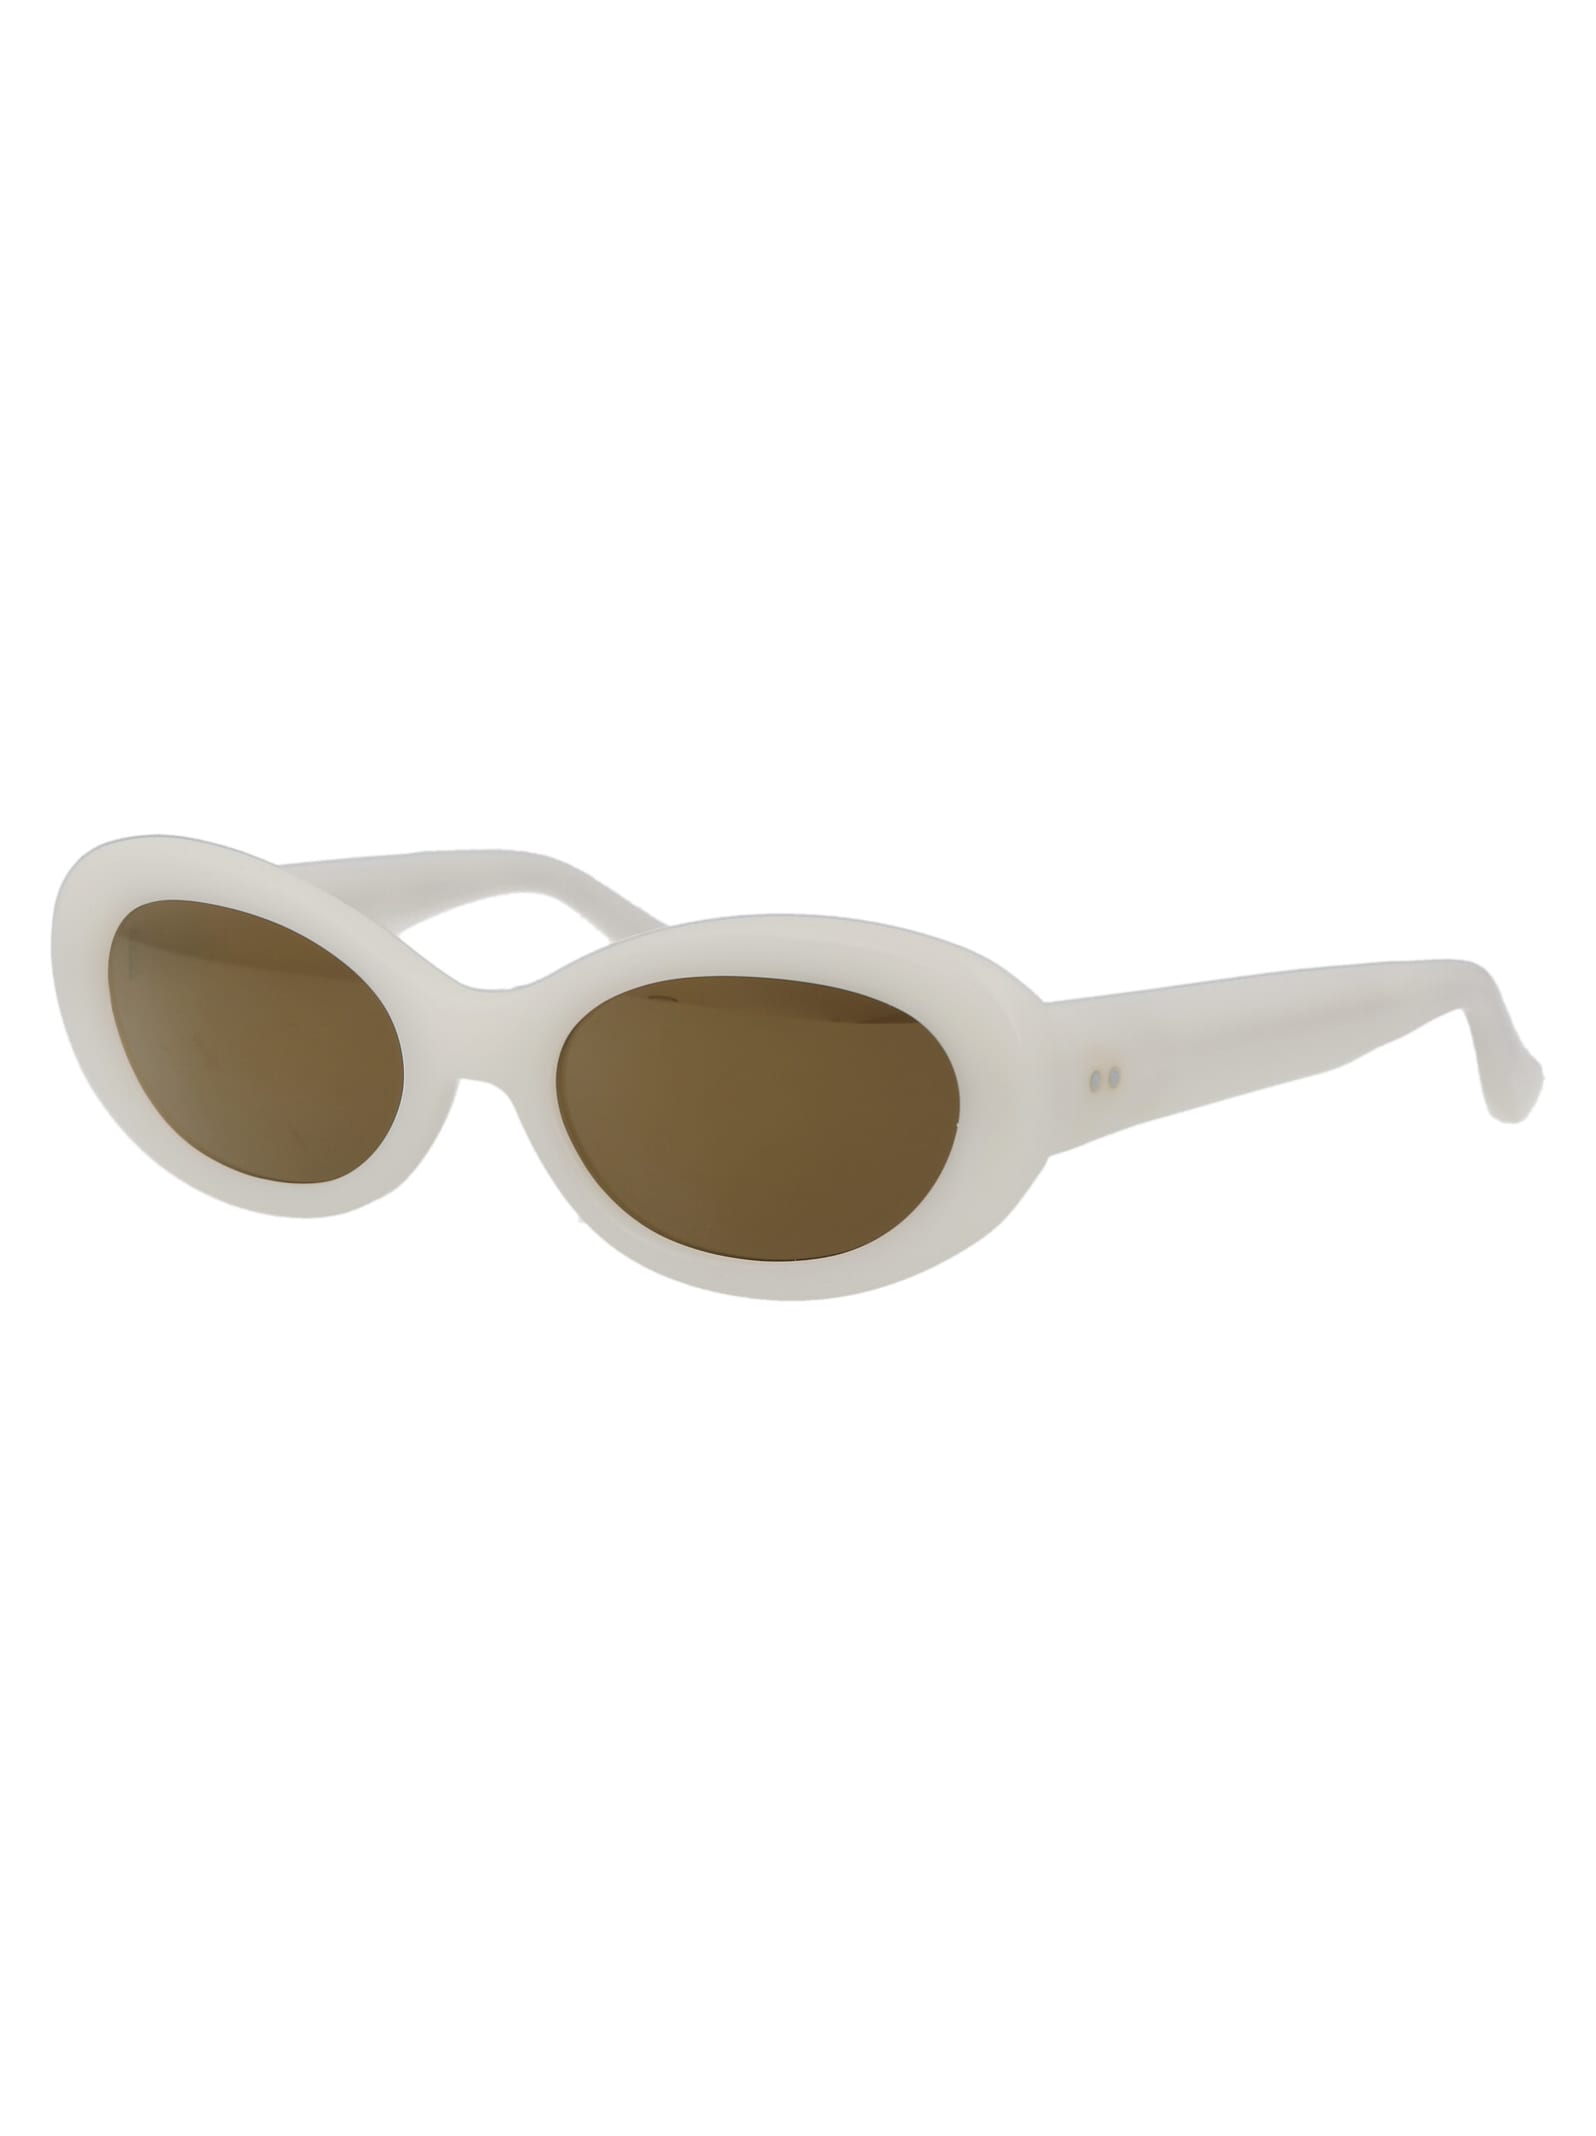 Shop Dries Van Noten Dvn211c7sun Sunglasses In White/silver/brownmirror